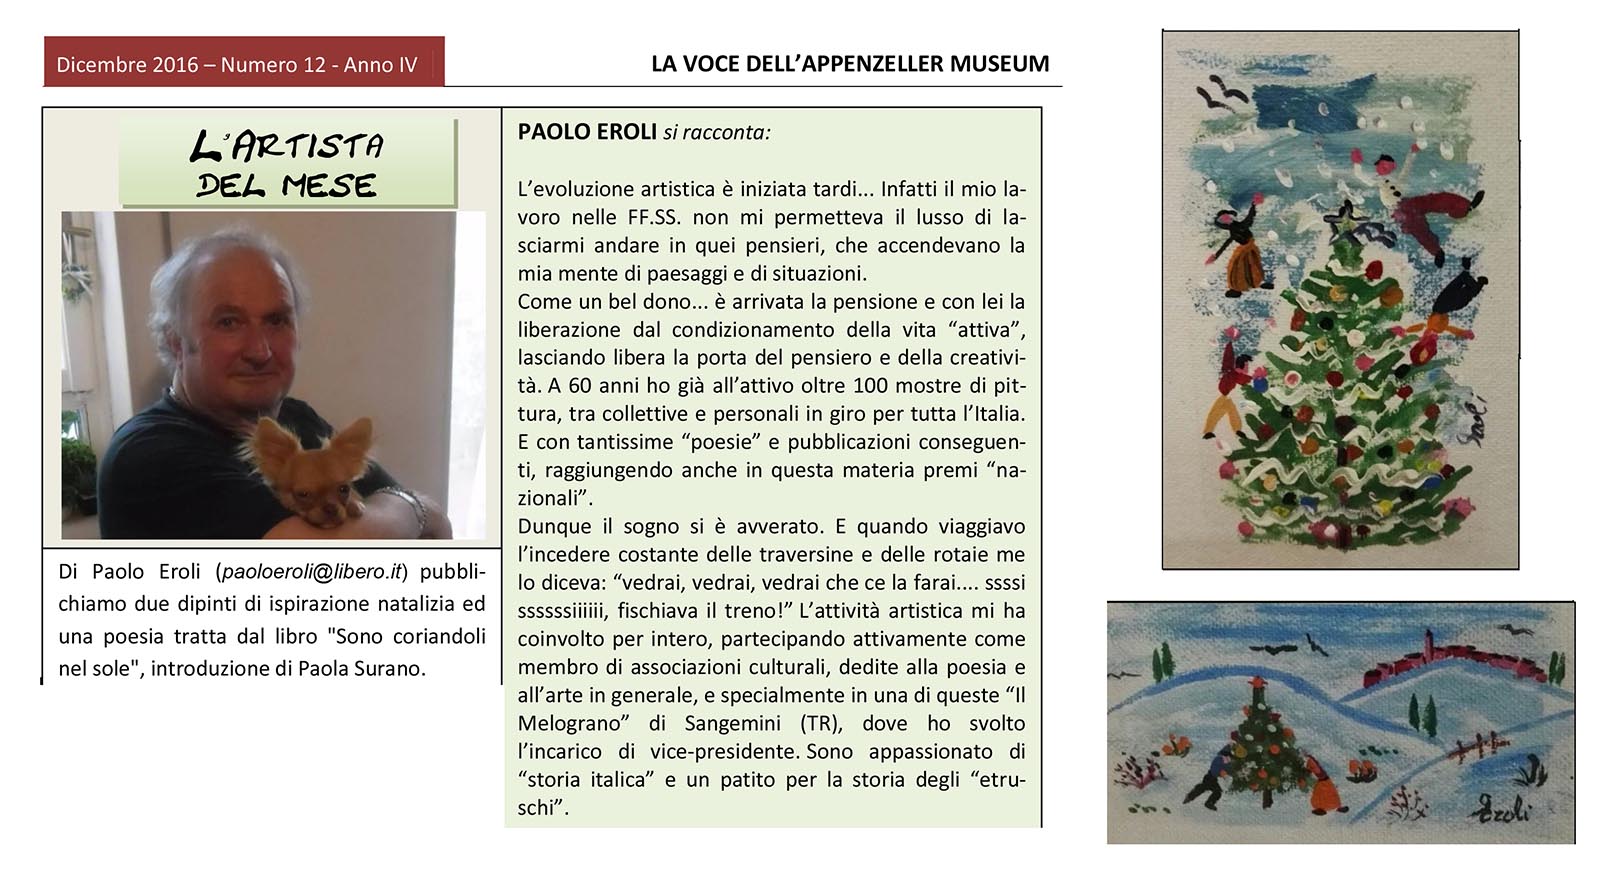 Dicembre 2016, n.12, La Voce dell’Appenzeller Museum – Paolo Eroli, Artista del mese